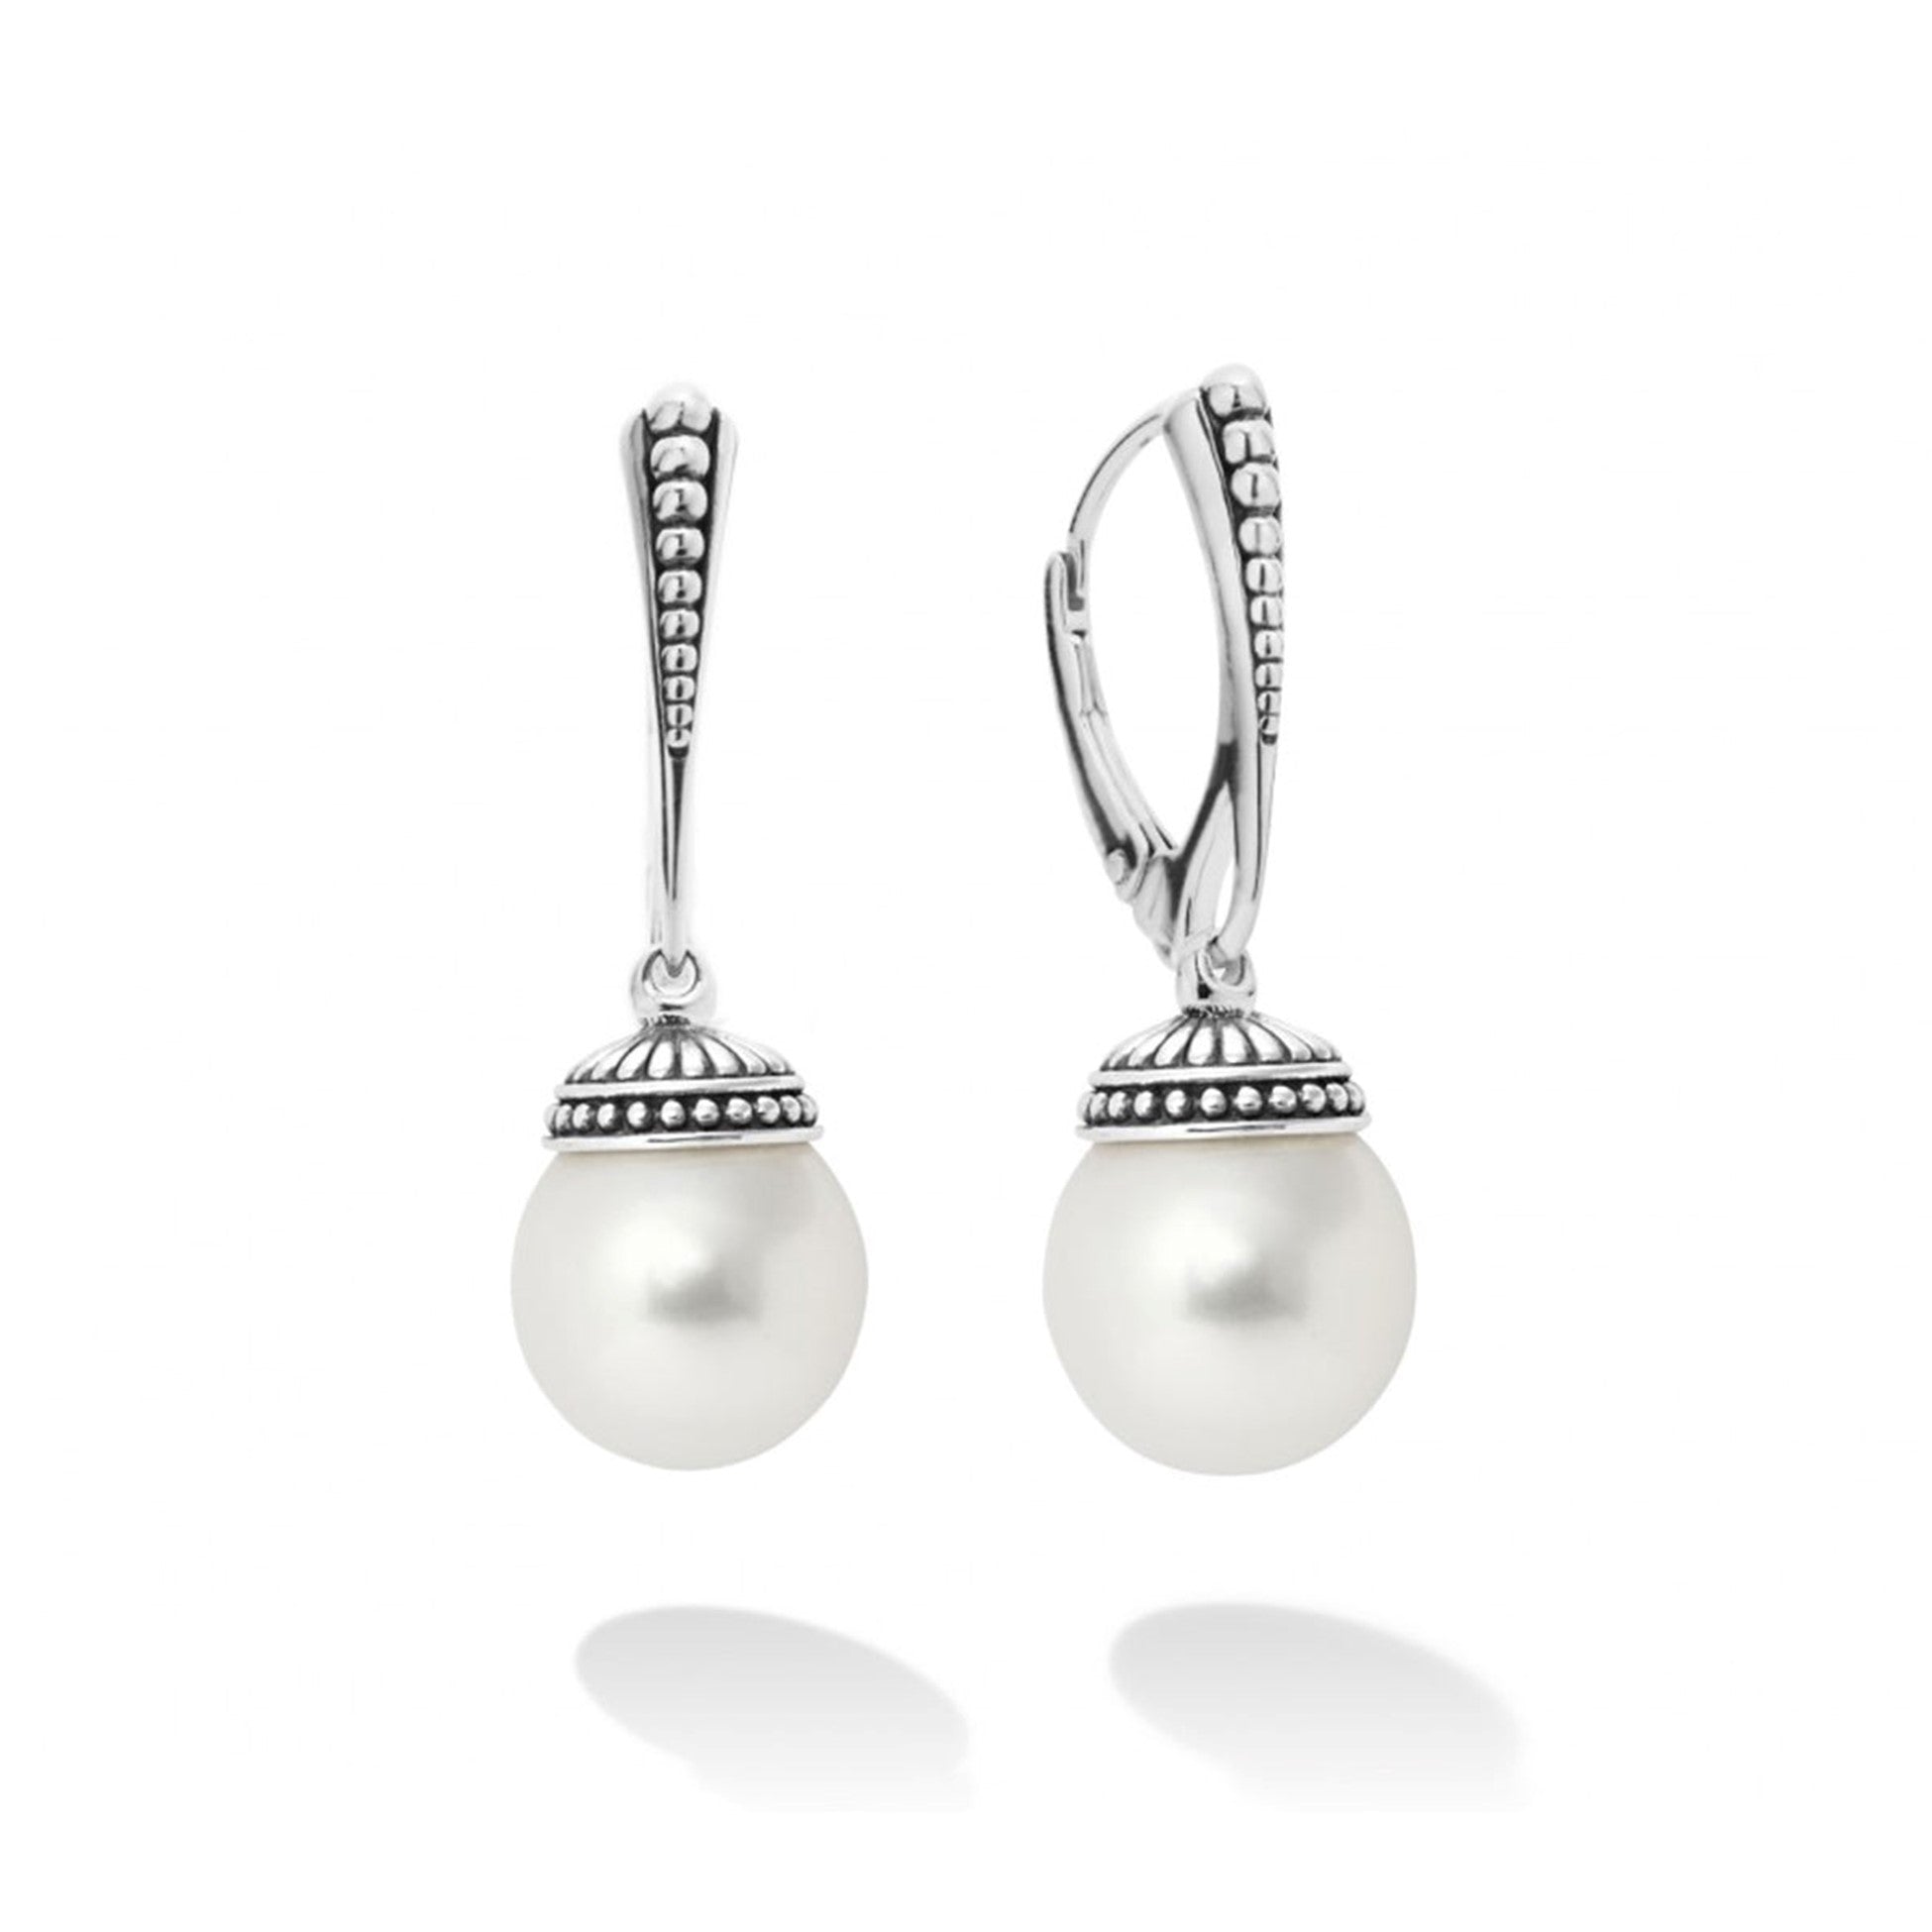 Style: Drop Description: Earrings Pearls - Pearl Earrings